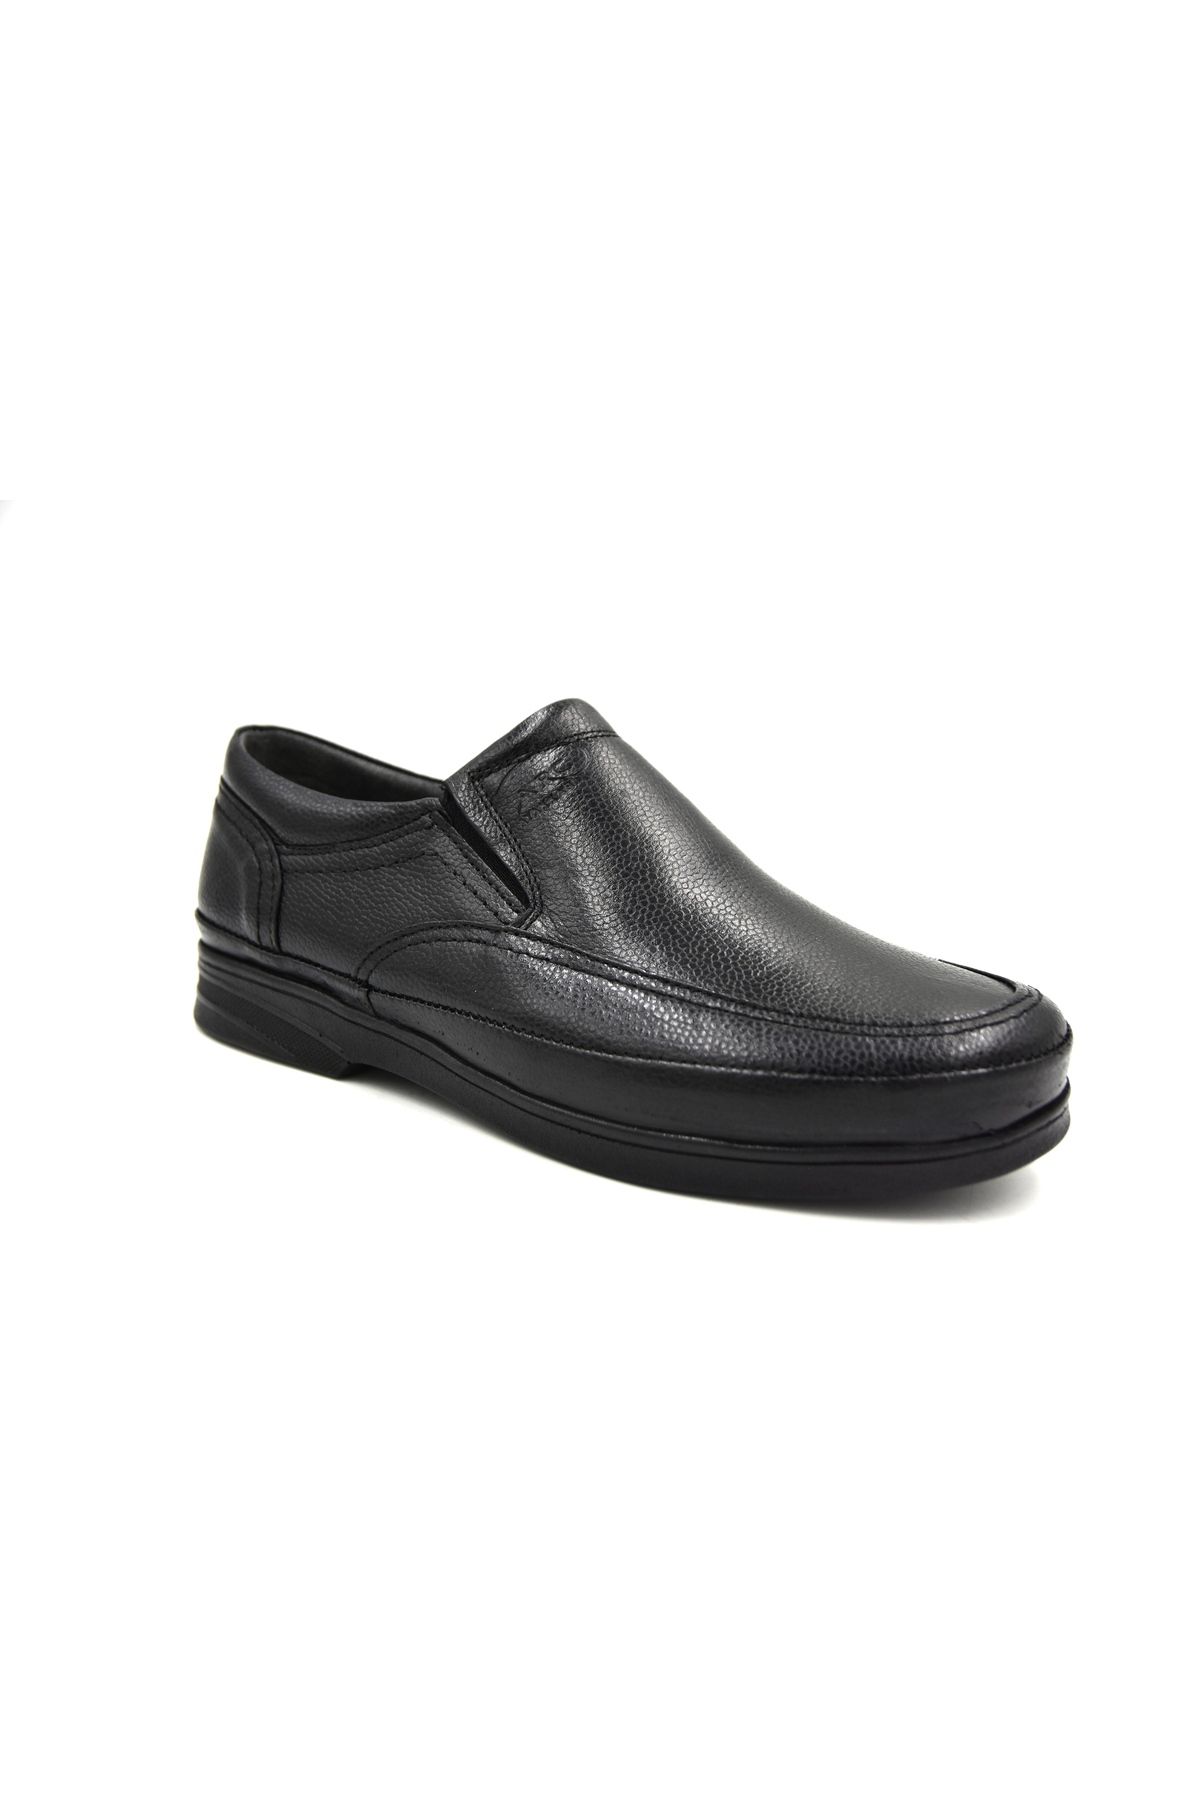 Prego (ARÇ) Hakiki Deri Poli Hafif Taban Comfort Erkek Günlük Ayakkabı SİYAH